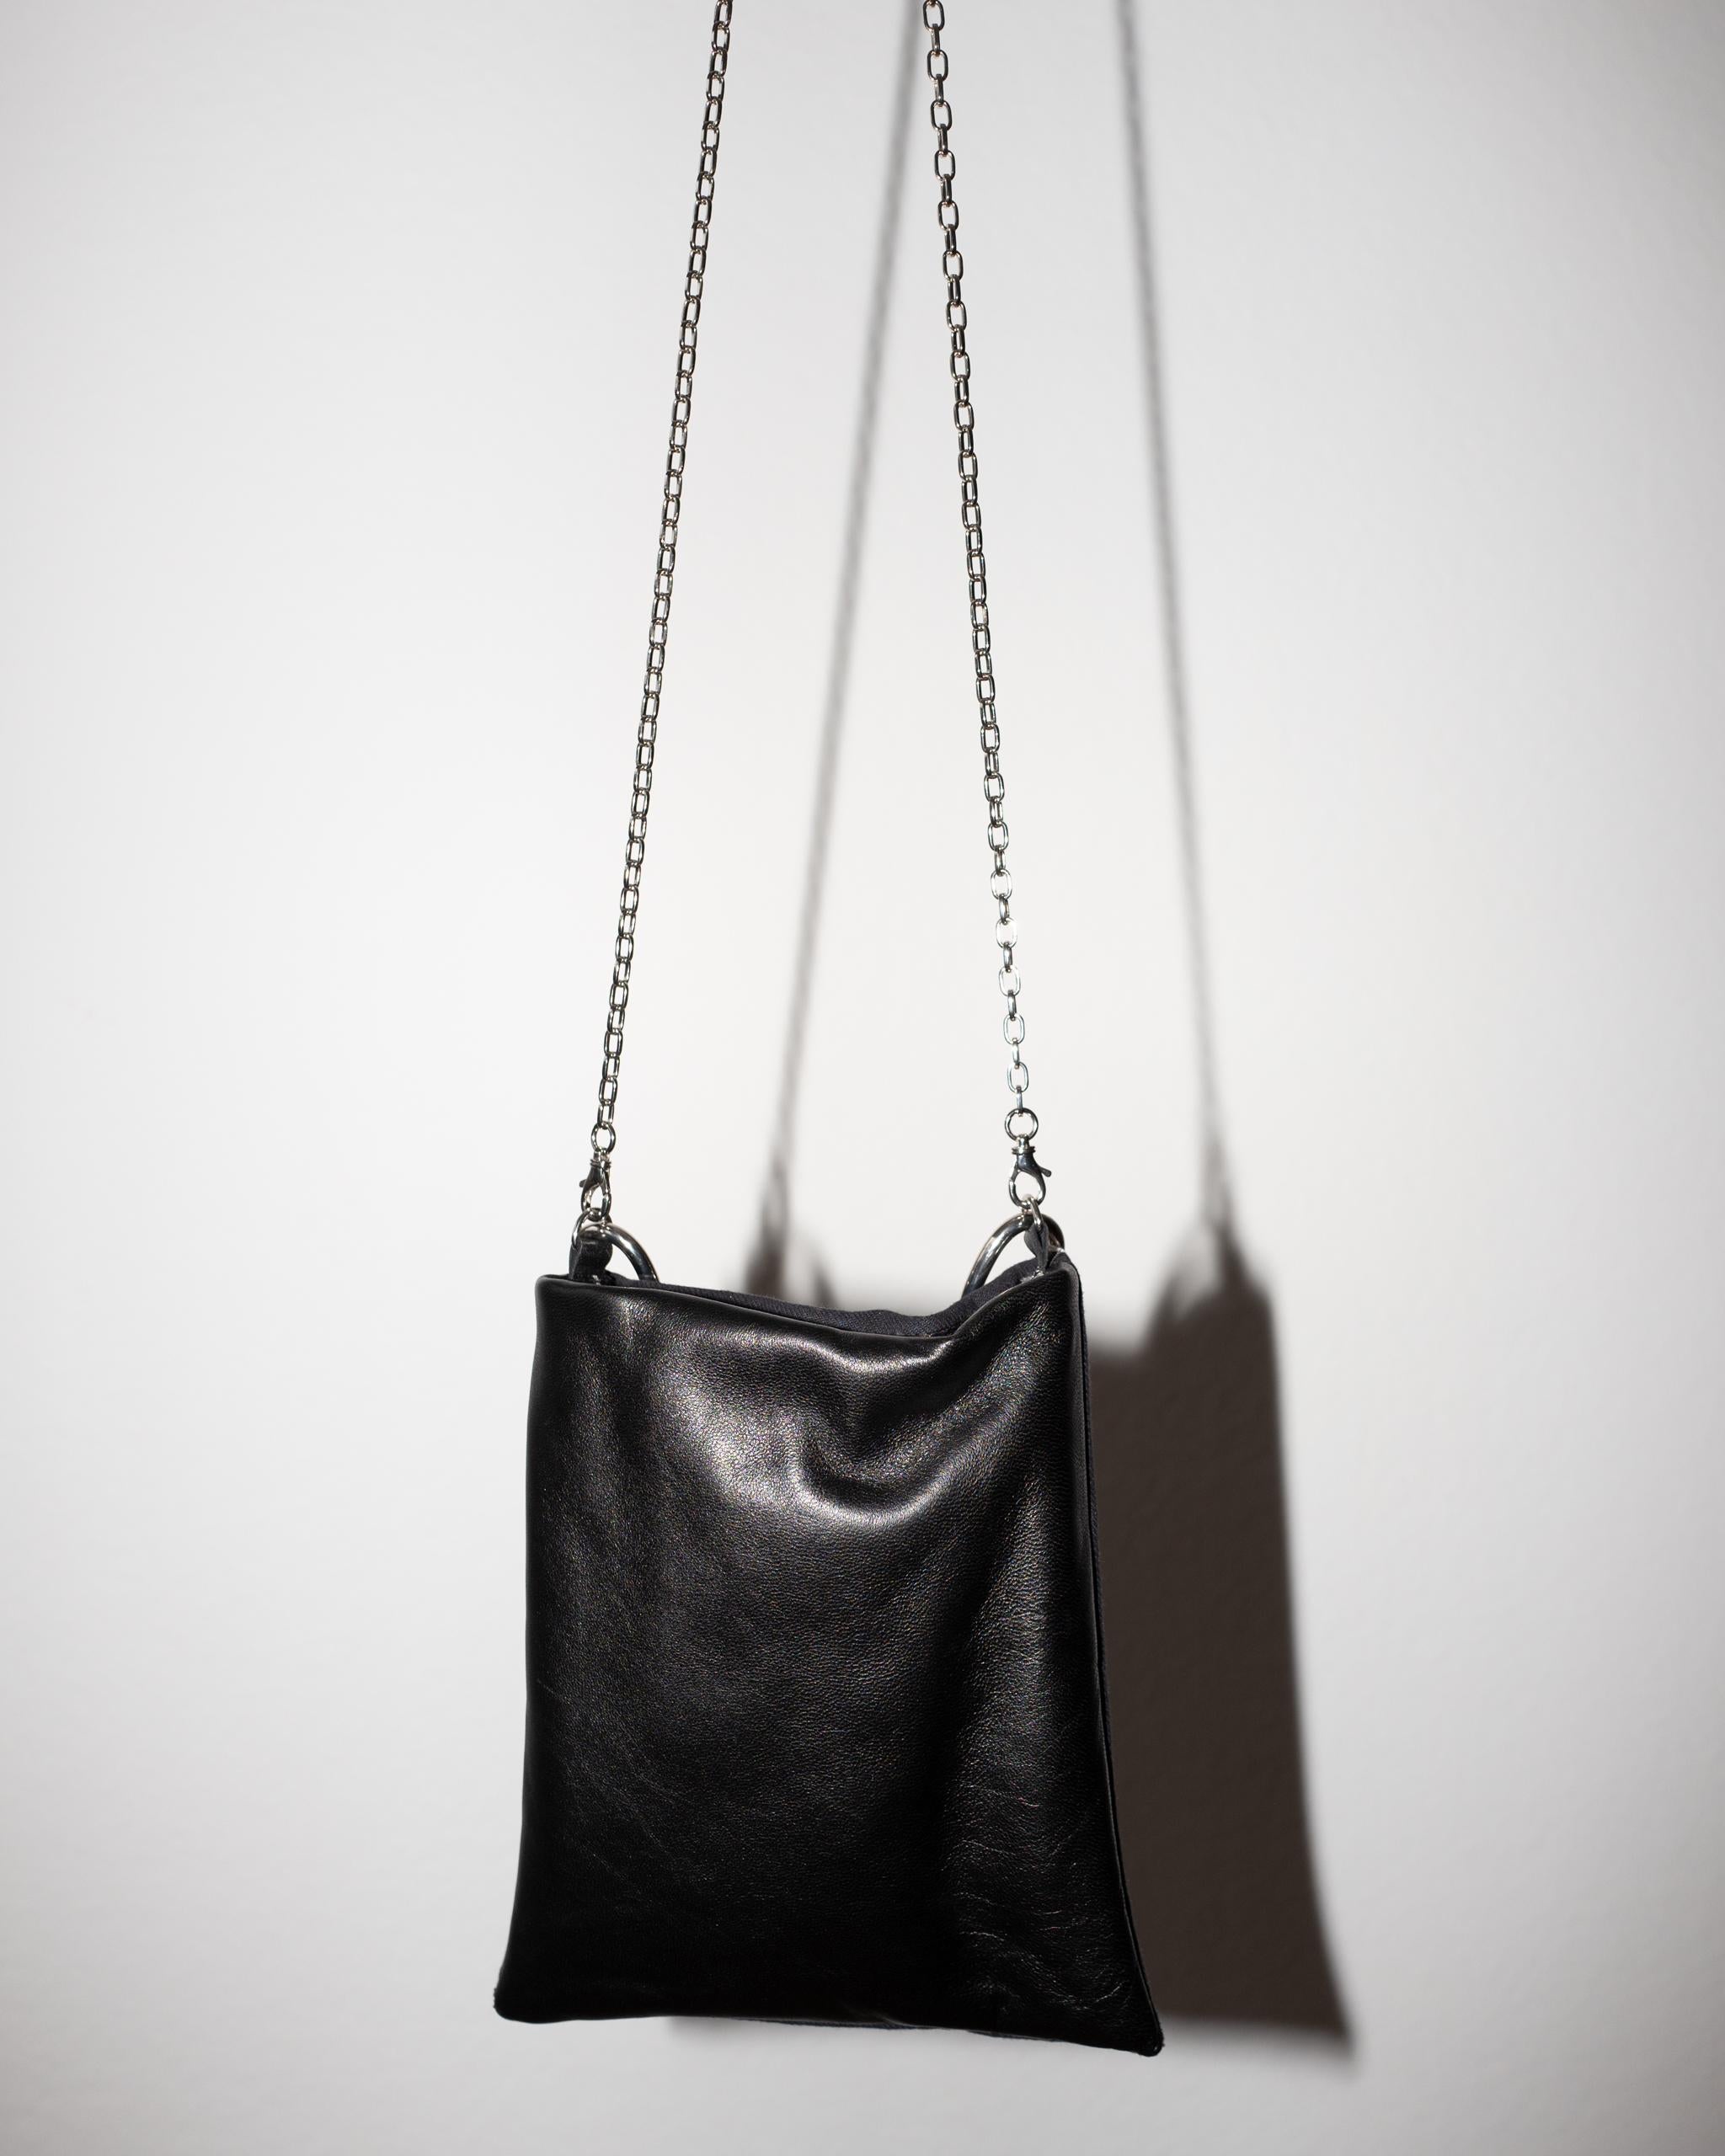 Crystal Embellished Blue Evening Shoulder Bag Black Leather Chunky Chain 5